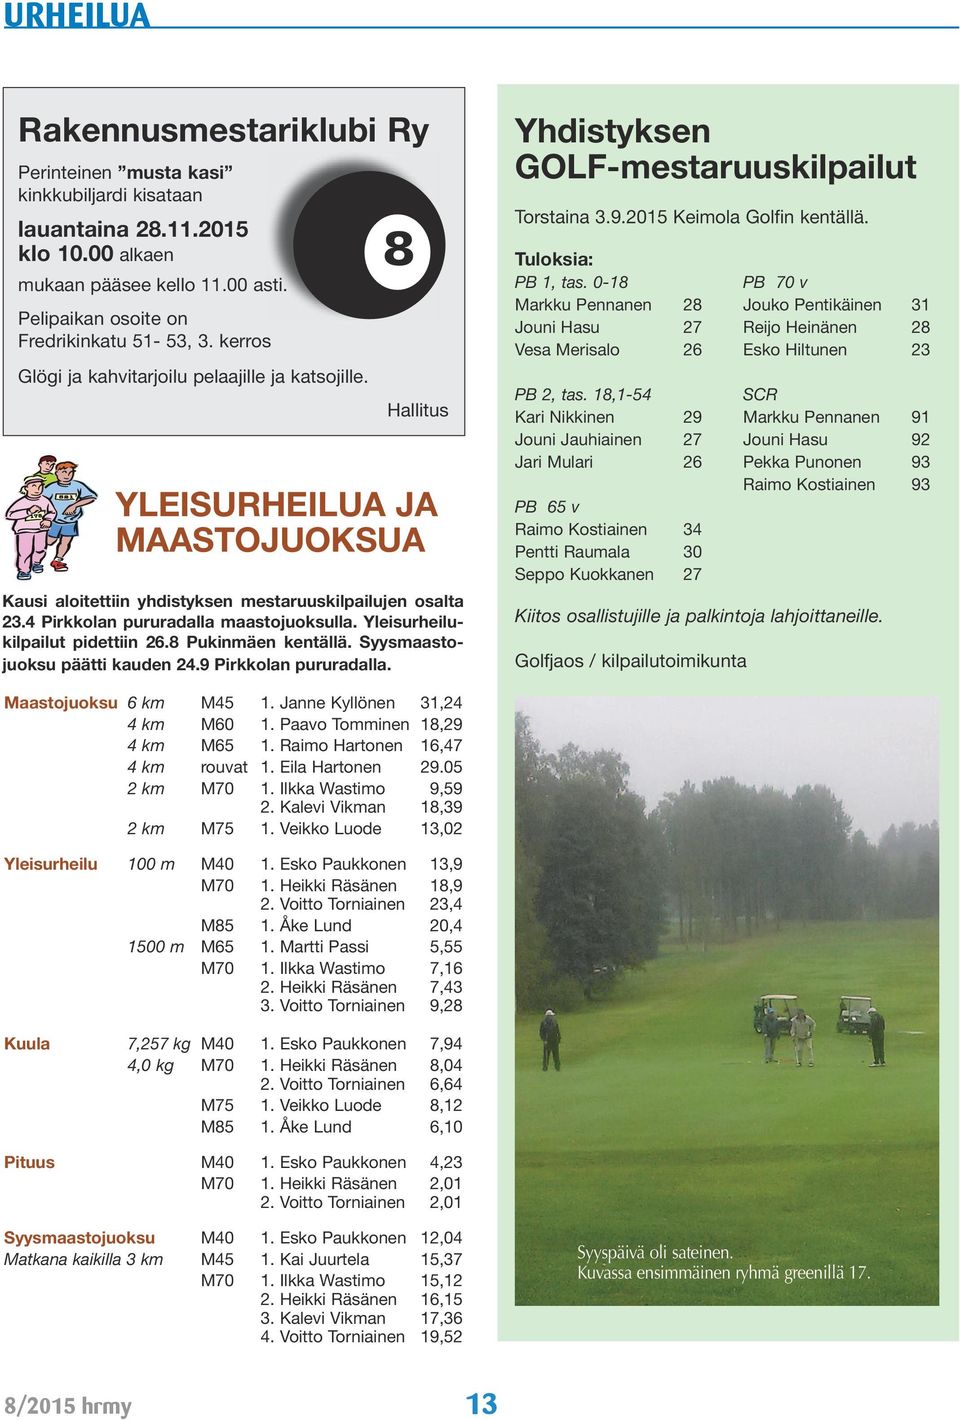 Yleisurheilukilpailut pidettiin 26.8 Pukinmäen kentällä. Syysmaastojuoksu päätti kauden 24.9 Pirkkolan pururadalla. Yhdistyksen GOLF-mestaruuskilpailut Torstaina 3.9.2015 Keimola Golfin kentällä.